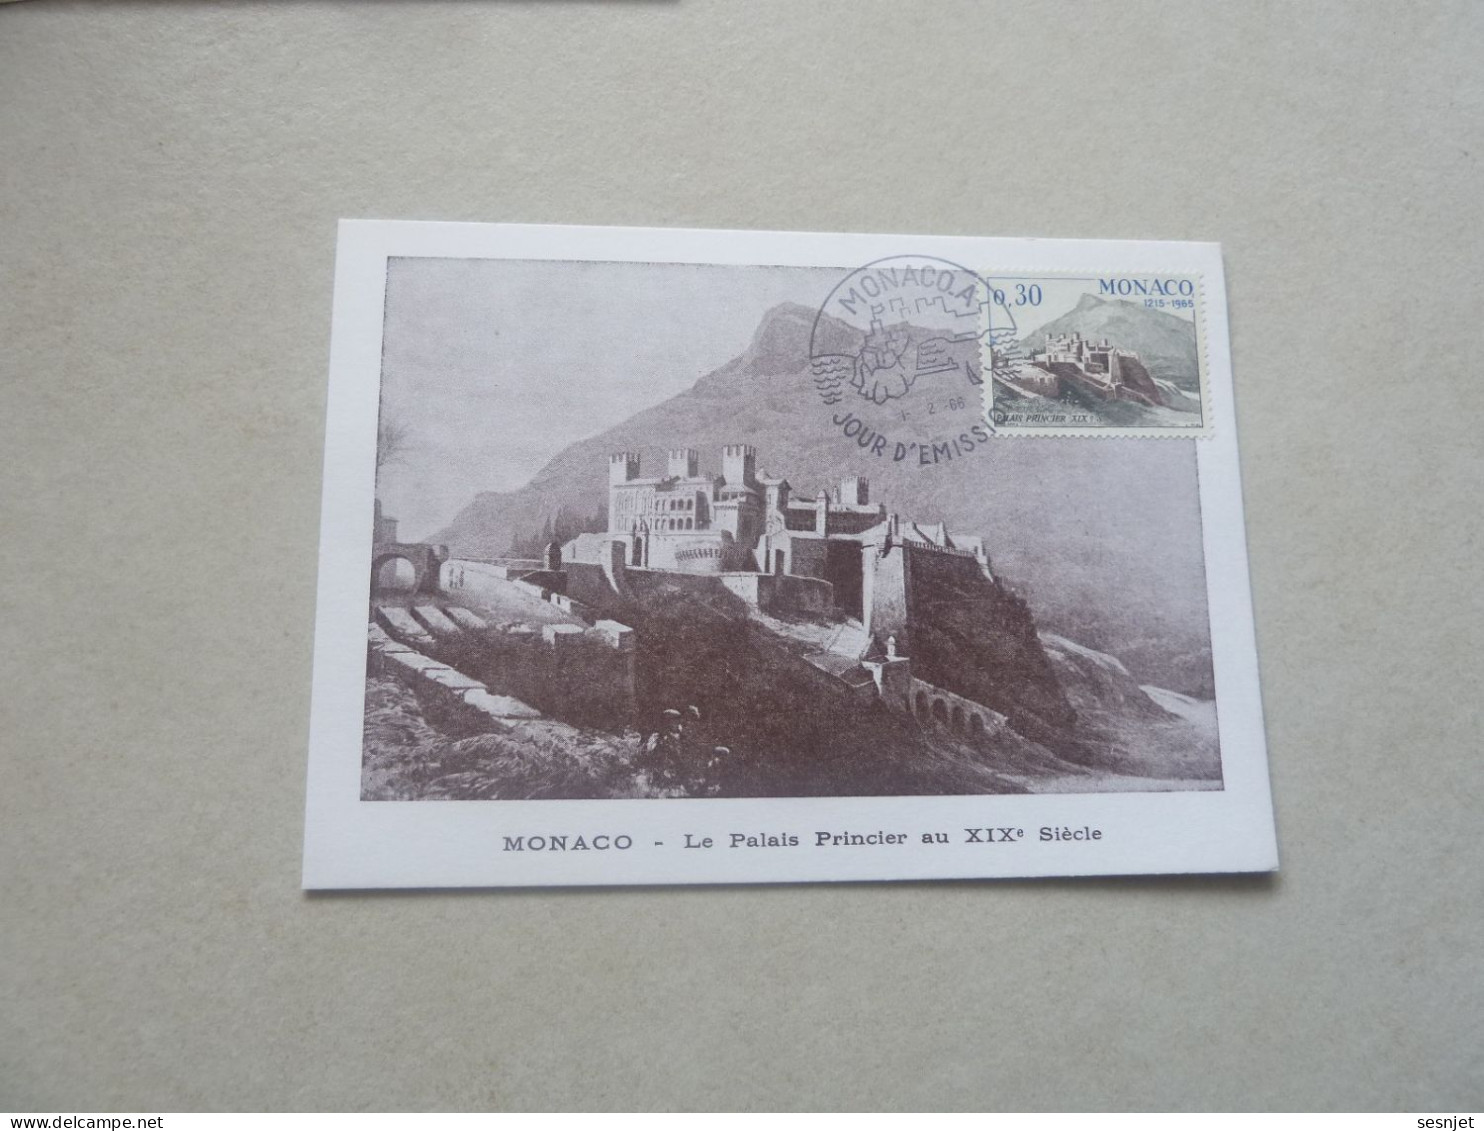 Monaco - Le Palais Au 19ème Siècle - 30c. - Yt 680 - Carte Premier Jour D'Emission - Année 1966 - - Maximumkarten (MC)